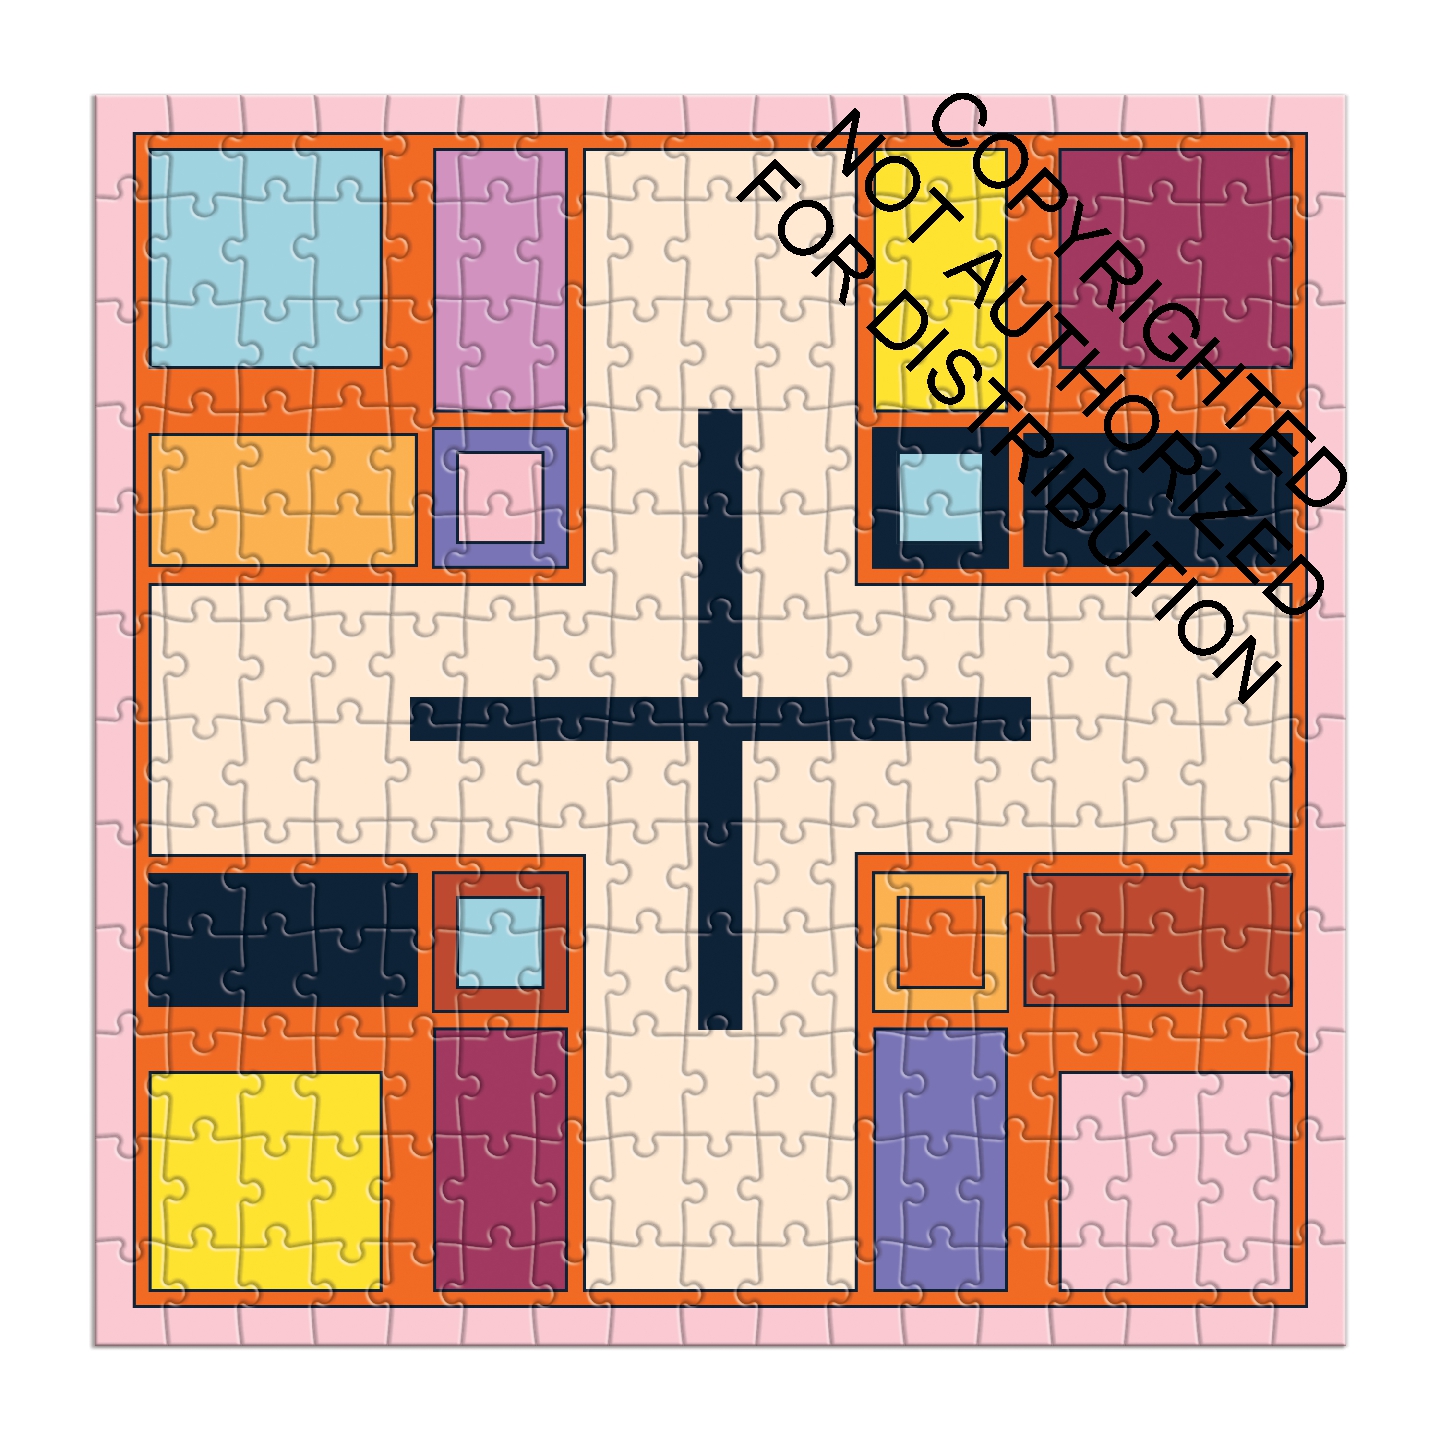 Frank Lloyd Wright Textile Blocks Set of 4 Puzzles